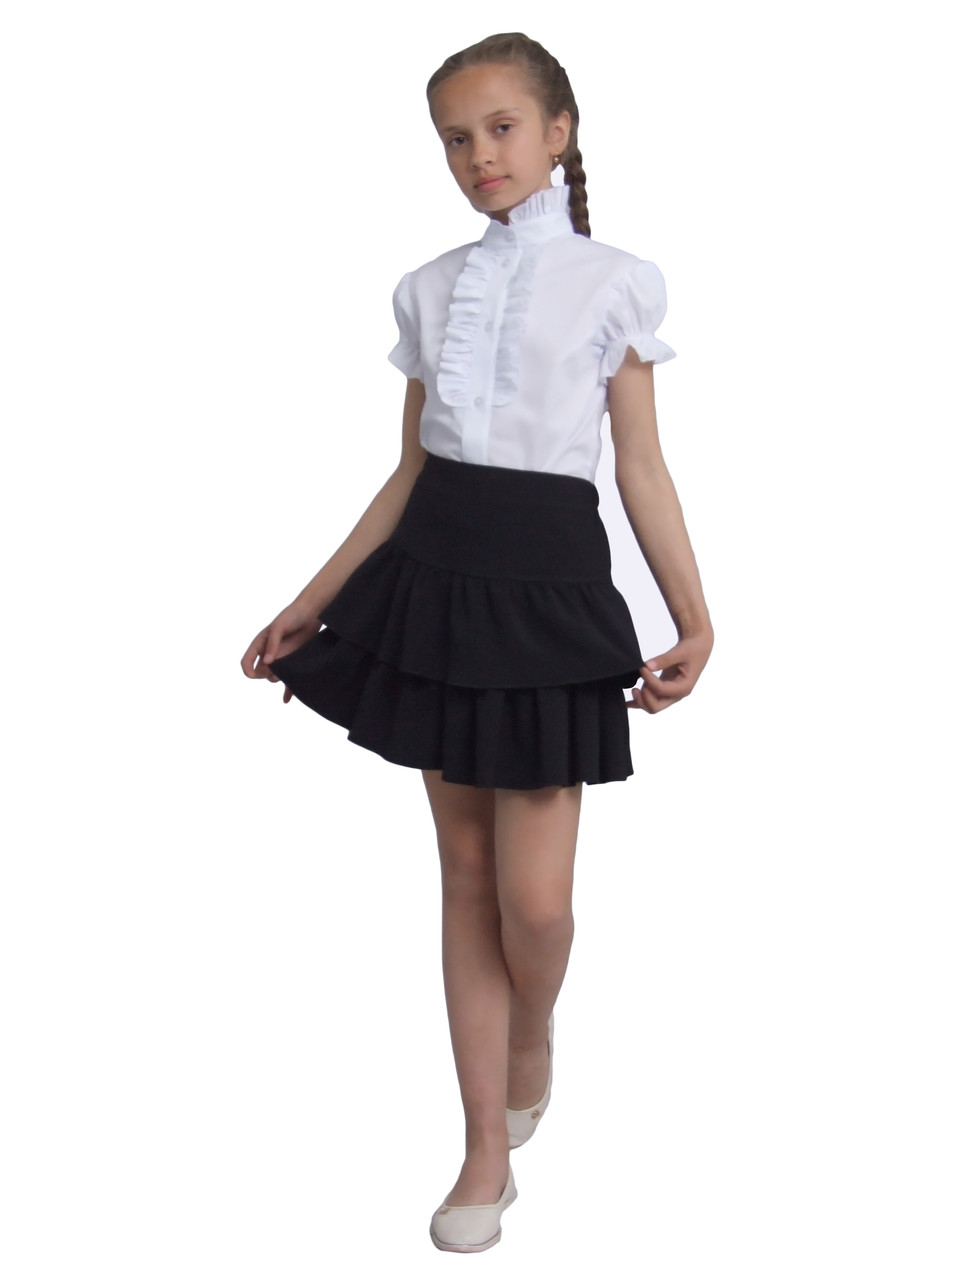 Блузка для дівчаток біла з коротким рукавом м1132 розмір 140 146 152 158 170 Попелюшка